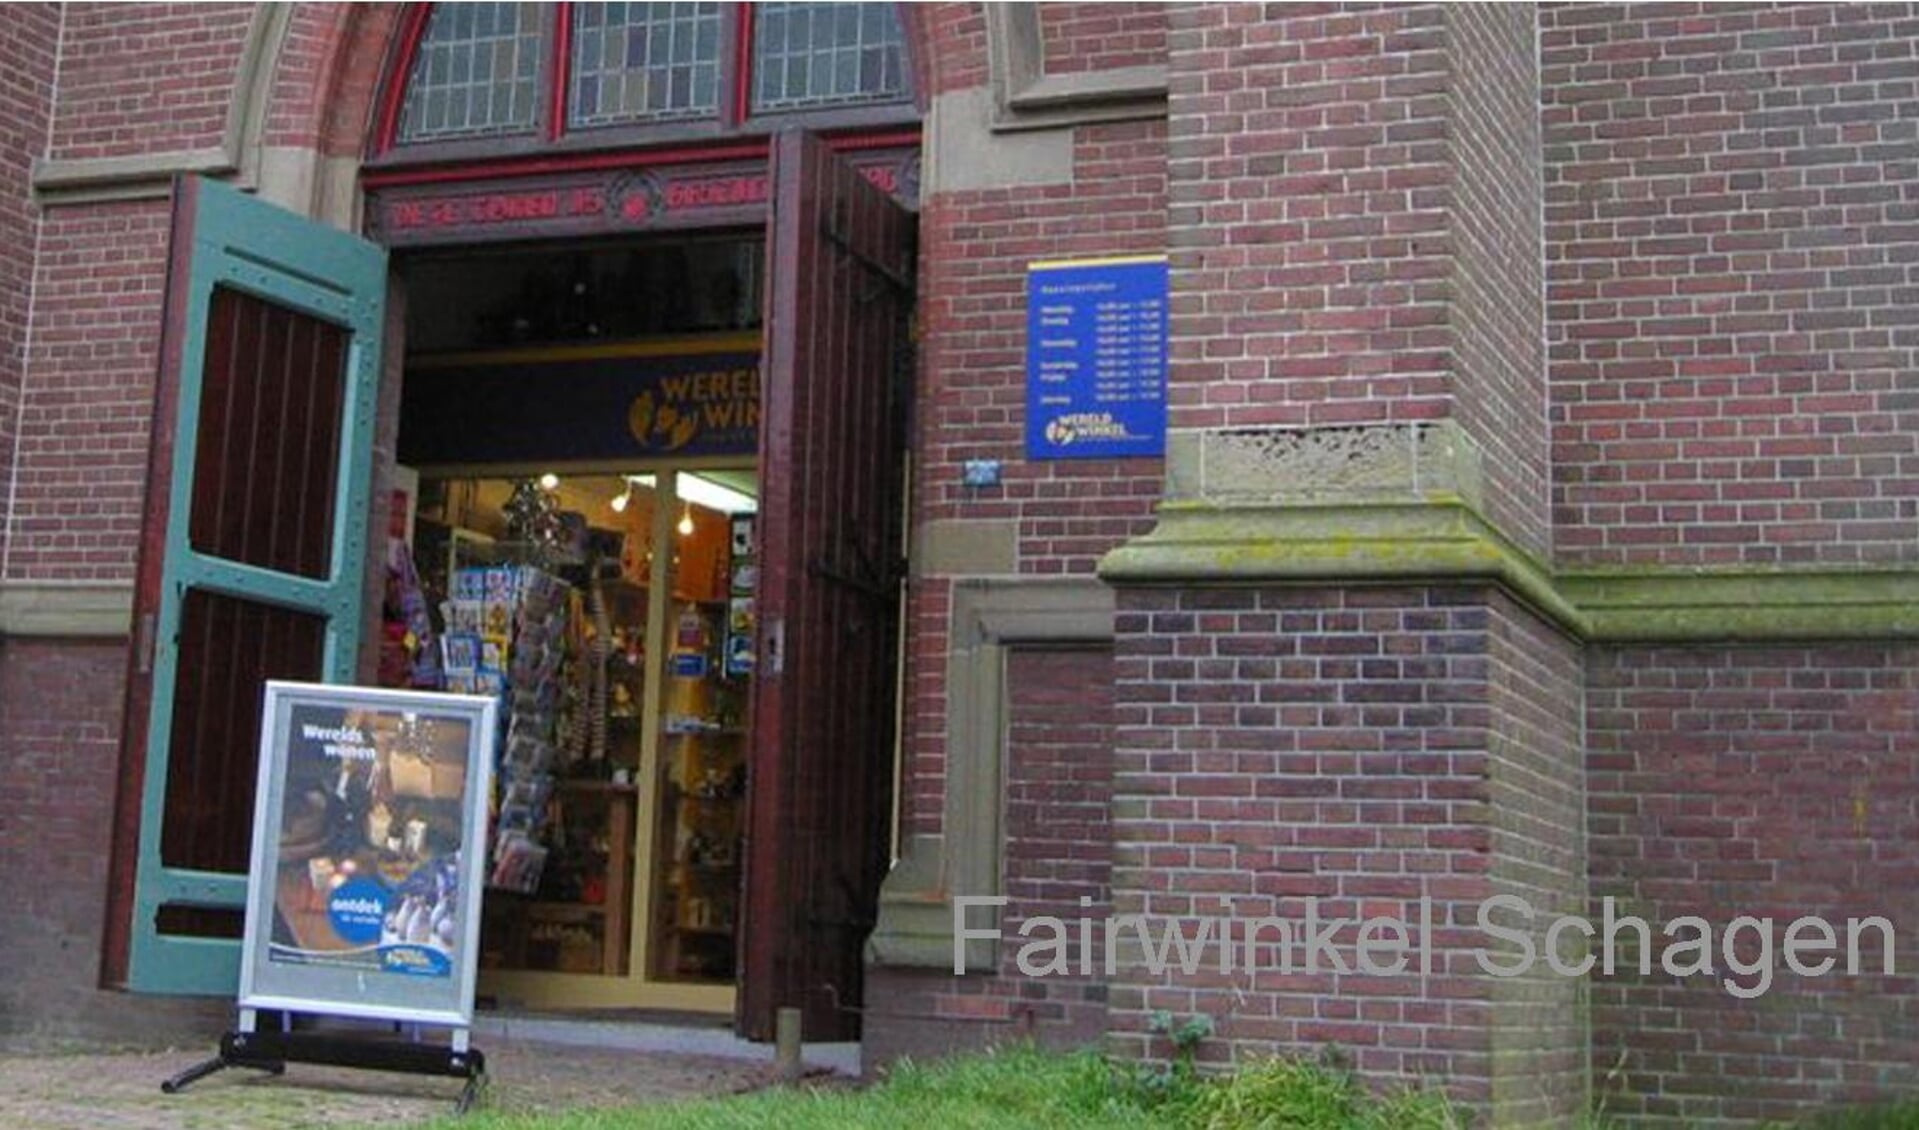 De Fairwinkel onder de kerk gaat na 40 jaar sluiten.